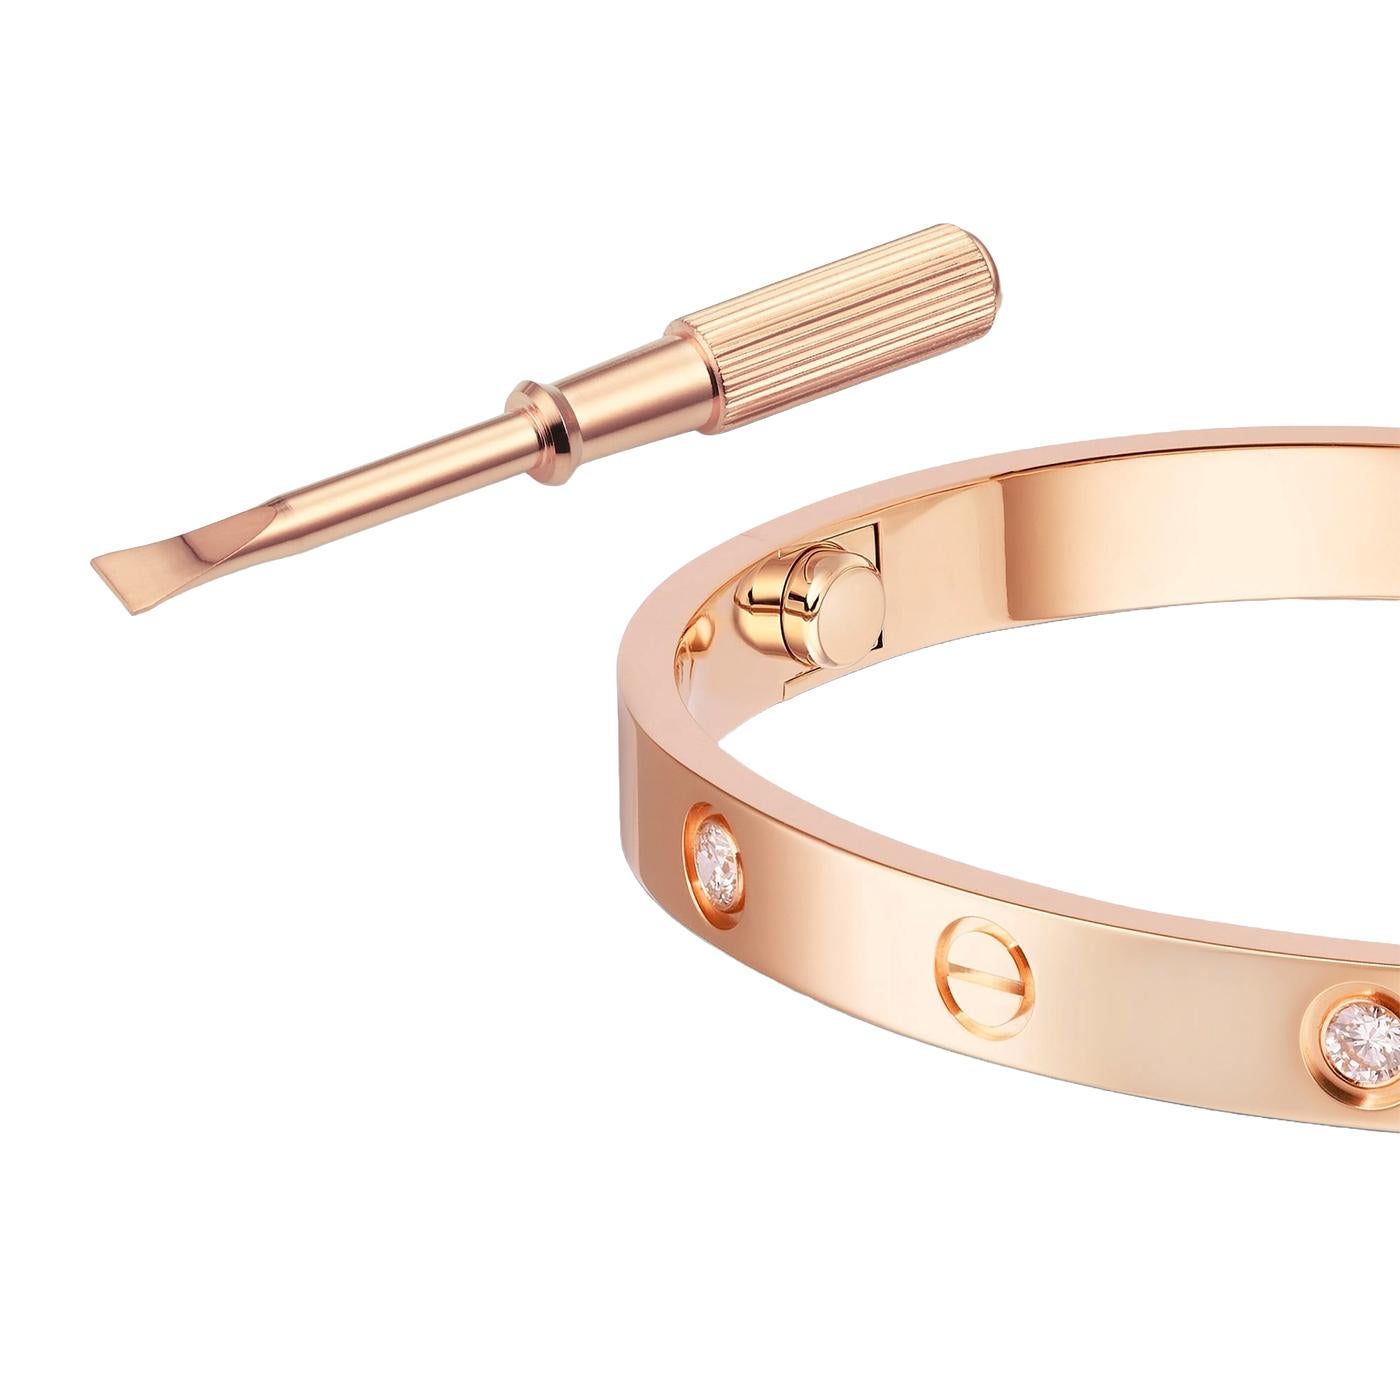 Modernist Cartier Love Bracelet 18K Rose Gold Size 17 With Screwdriver Bangle For Sale